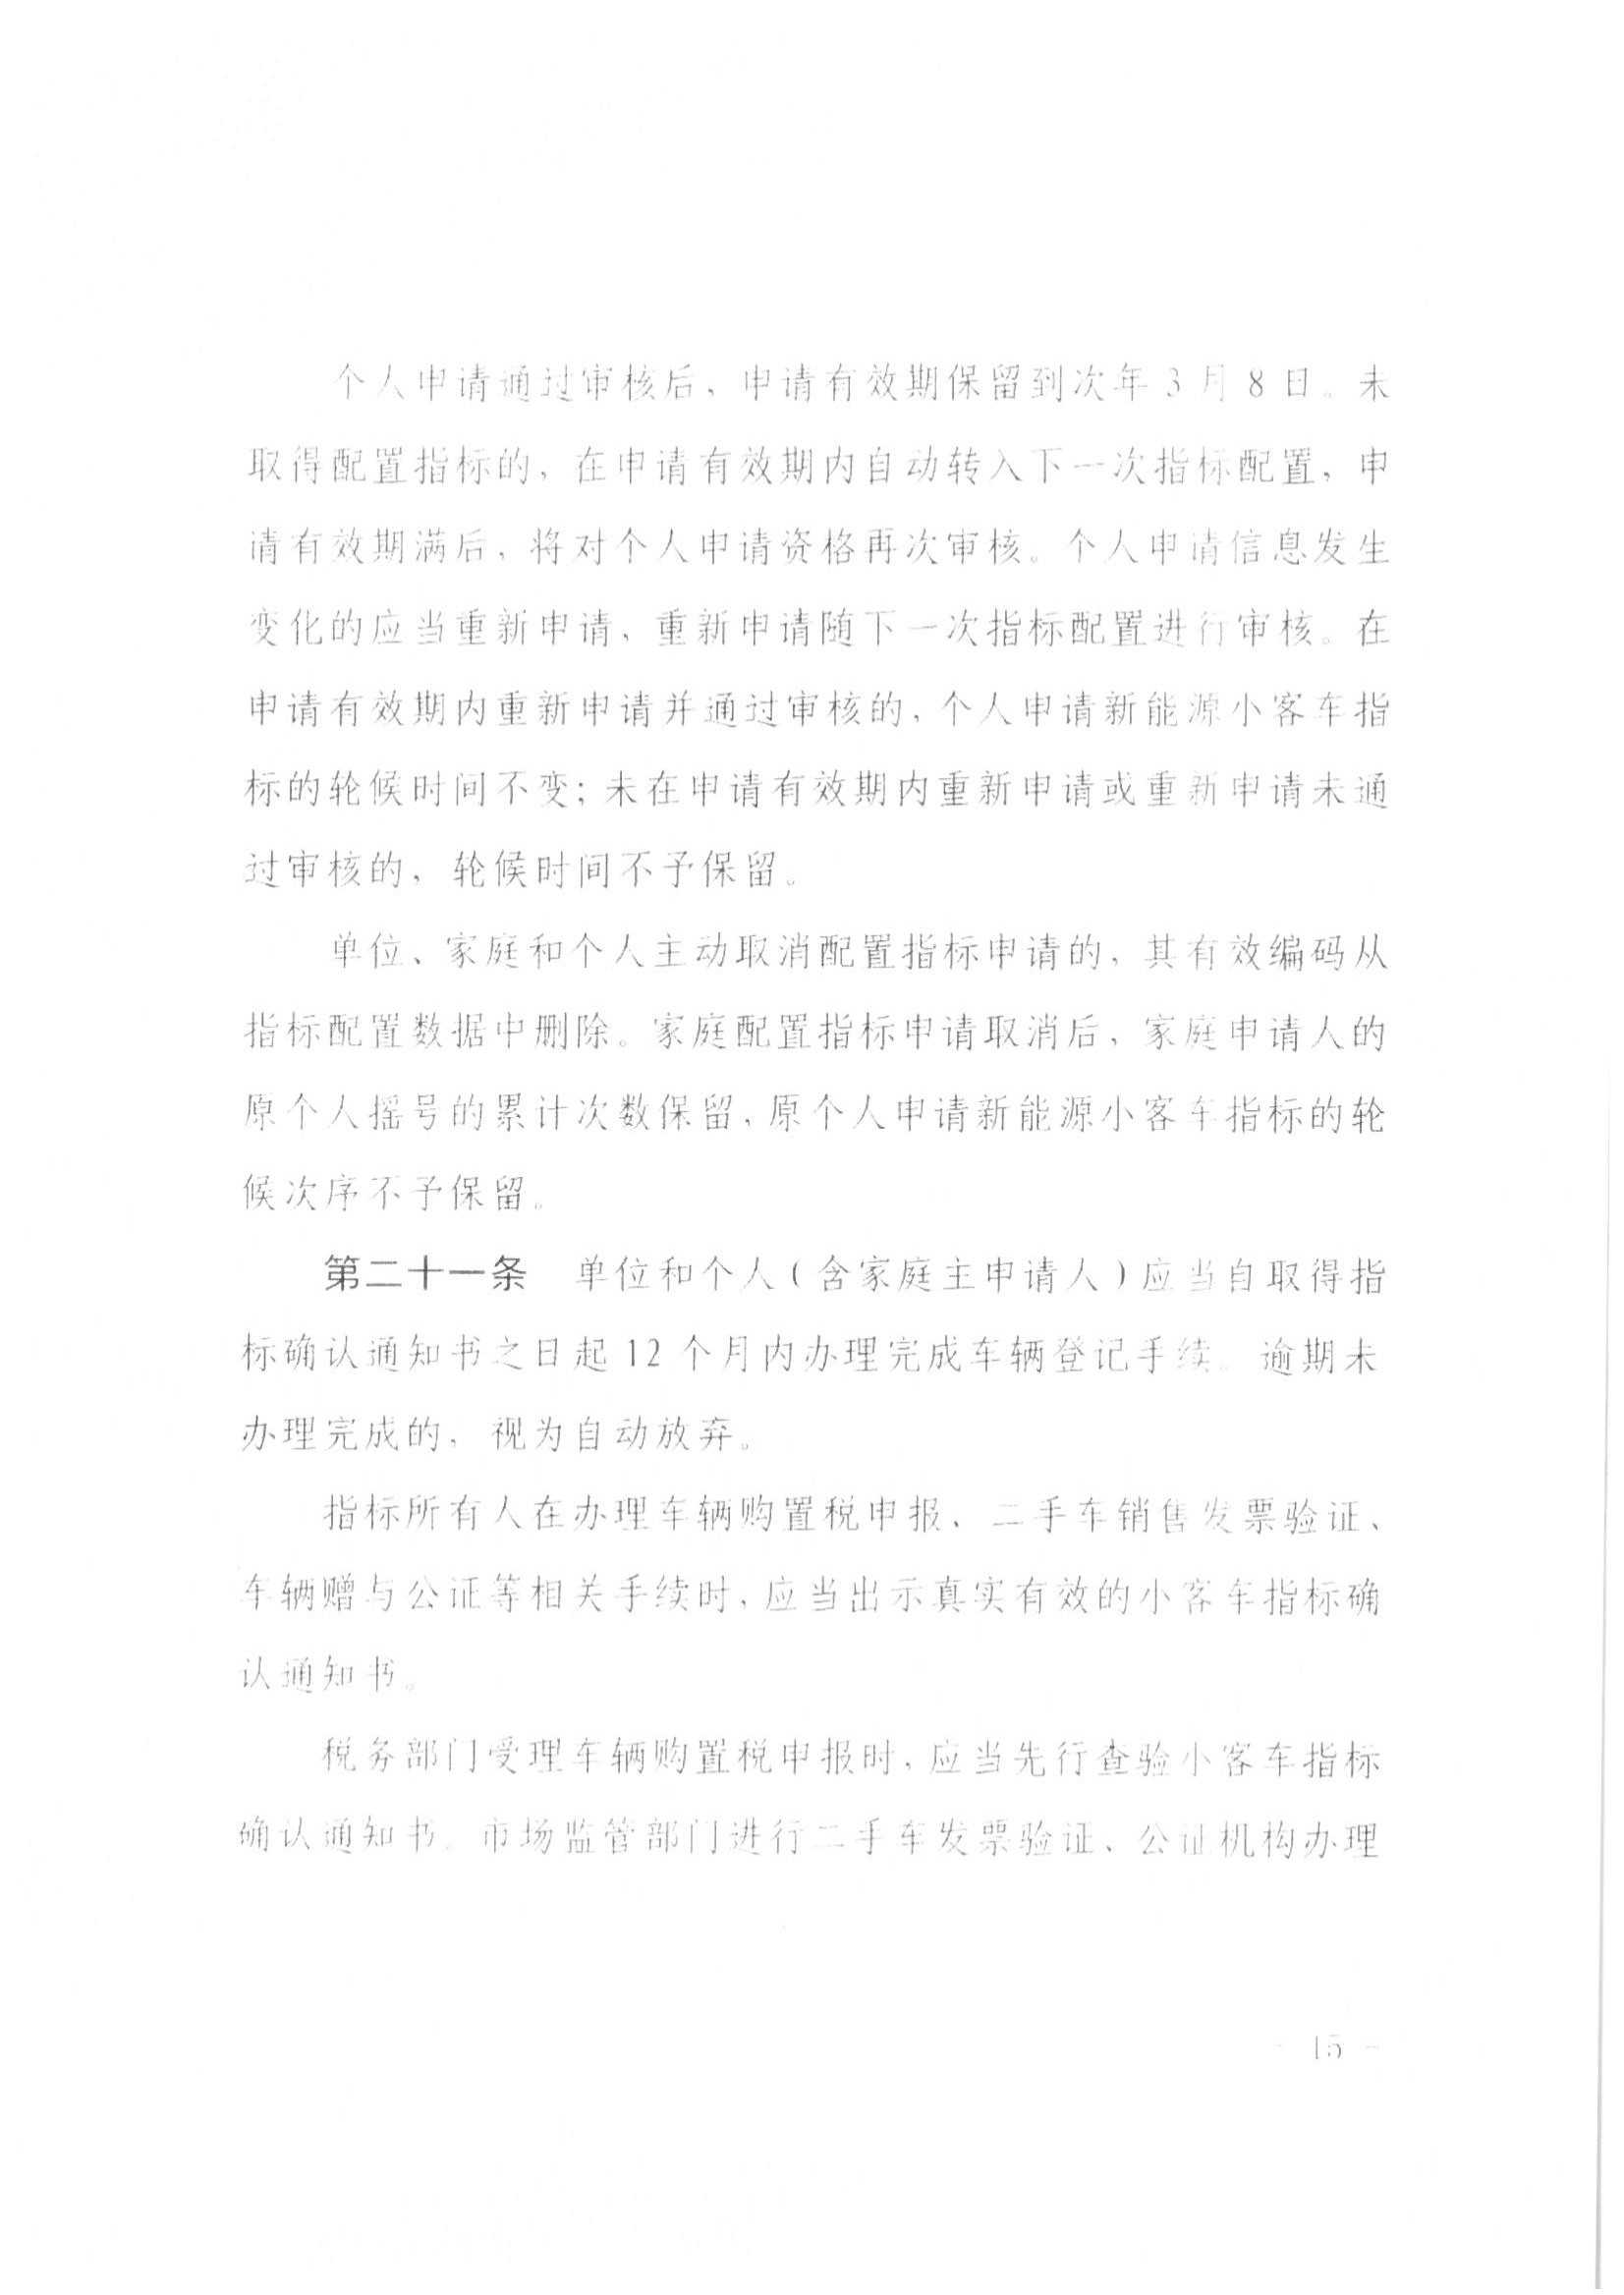 13、北京市公证协会关于印发《北京市公证协会规范执业指引》第13号的通知_37